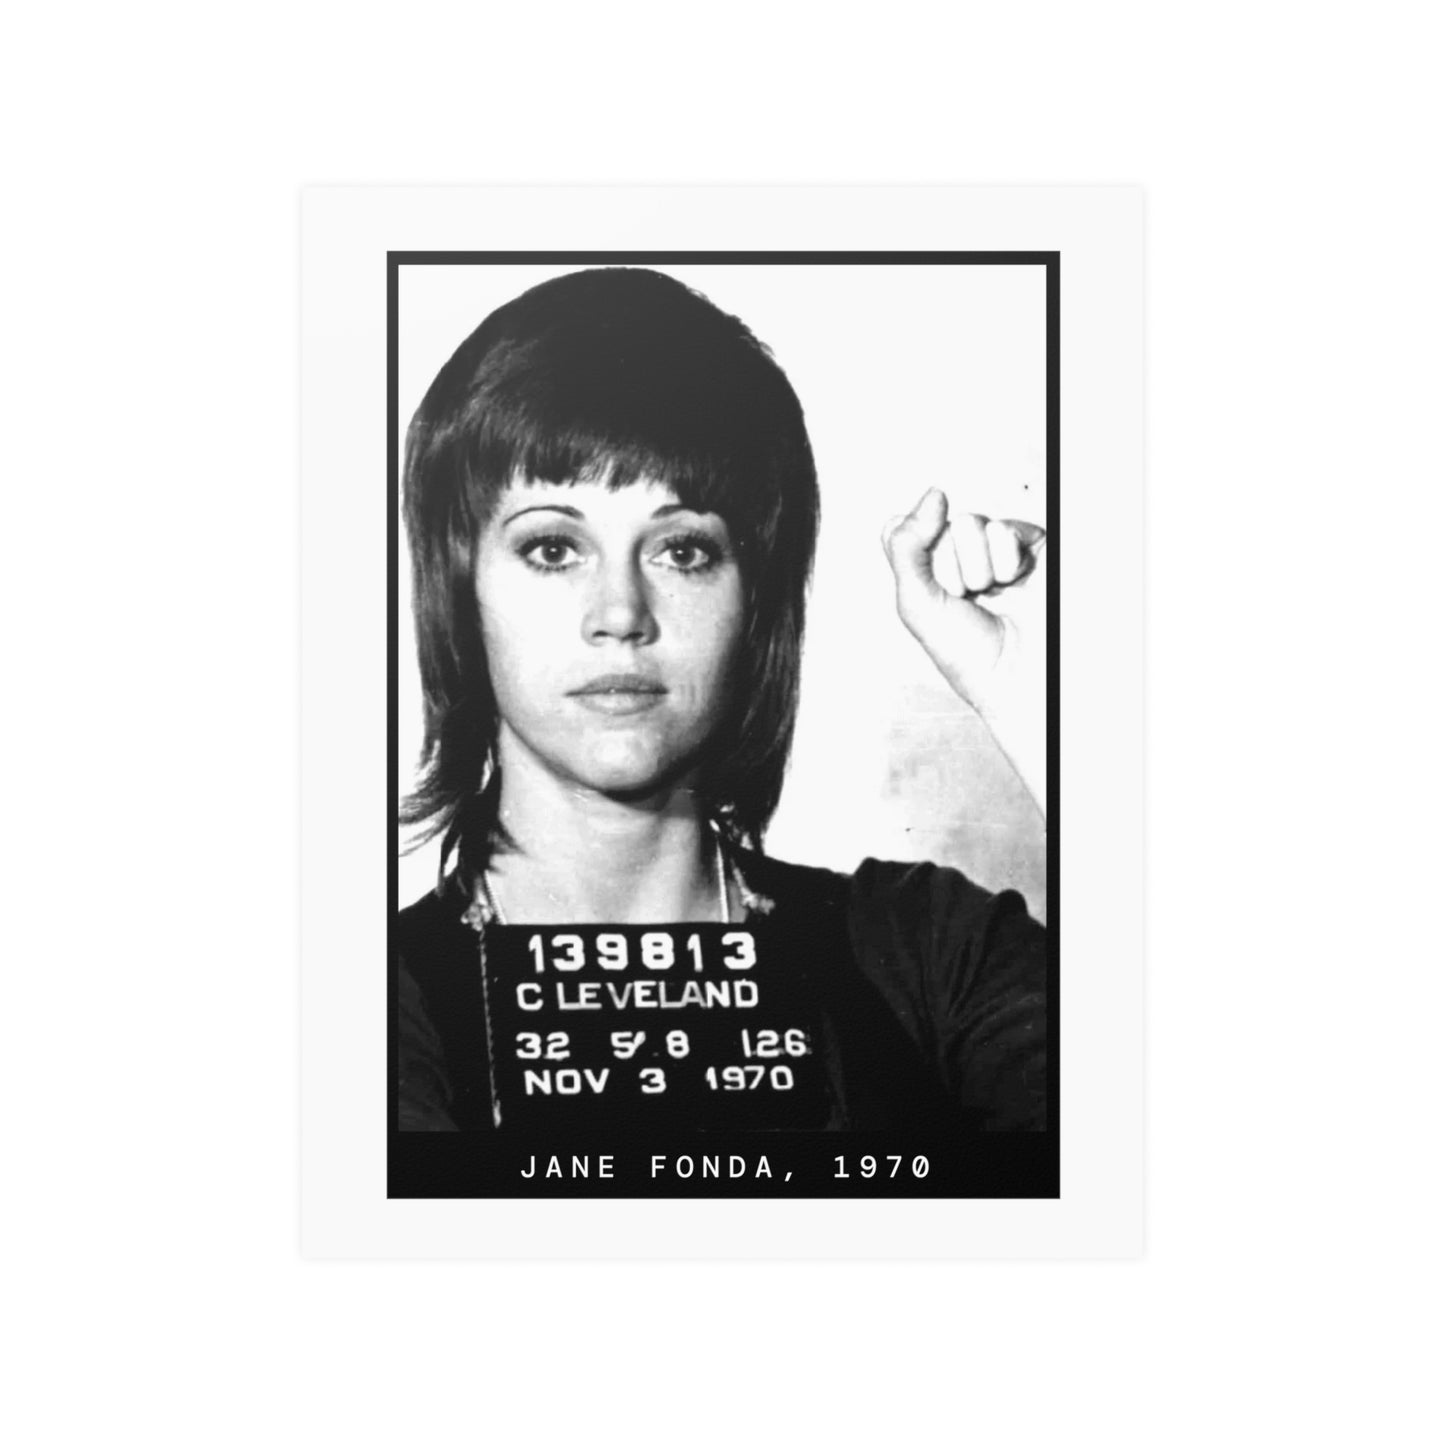 Jane Fonda, 1970 Activist Mugshot Poster